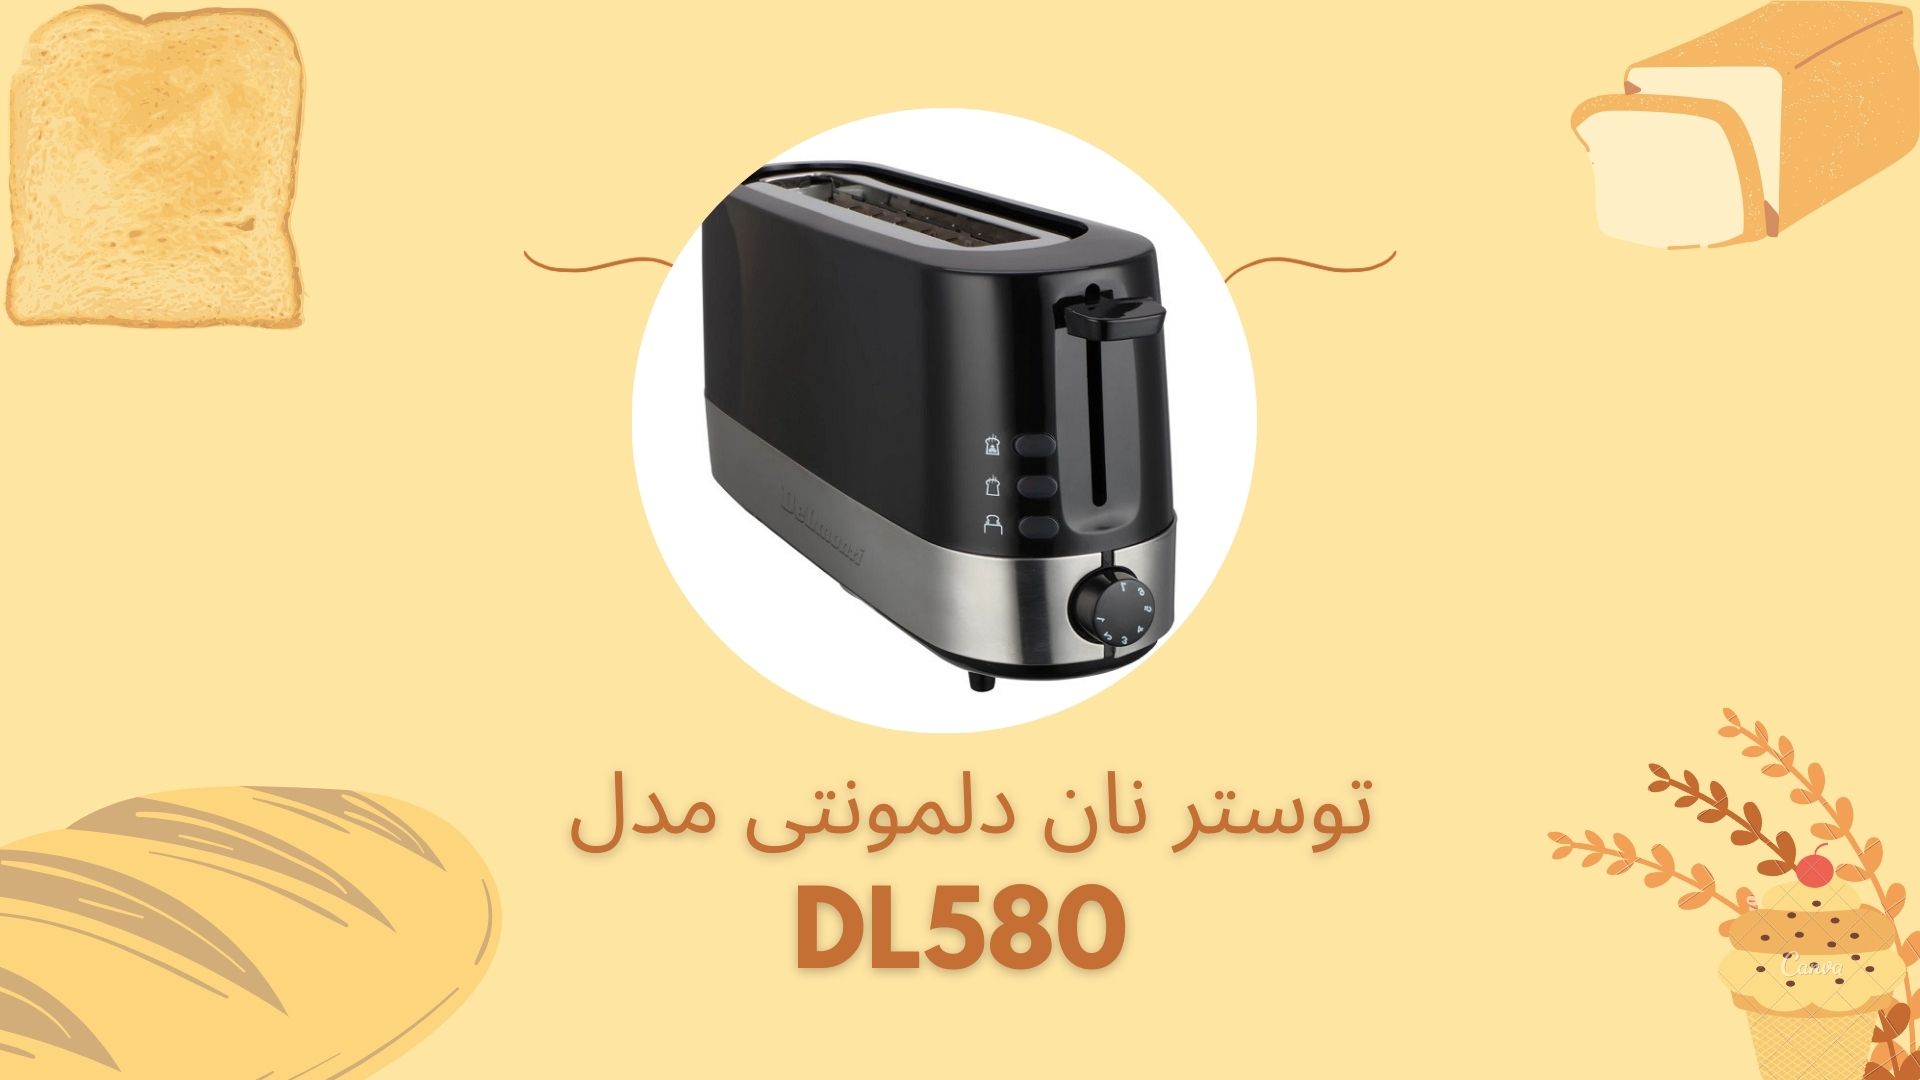 خرید توستر نان دلمونتی مدل DL580